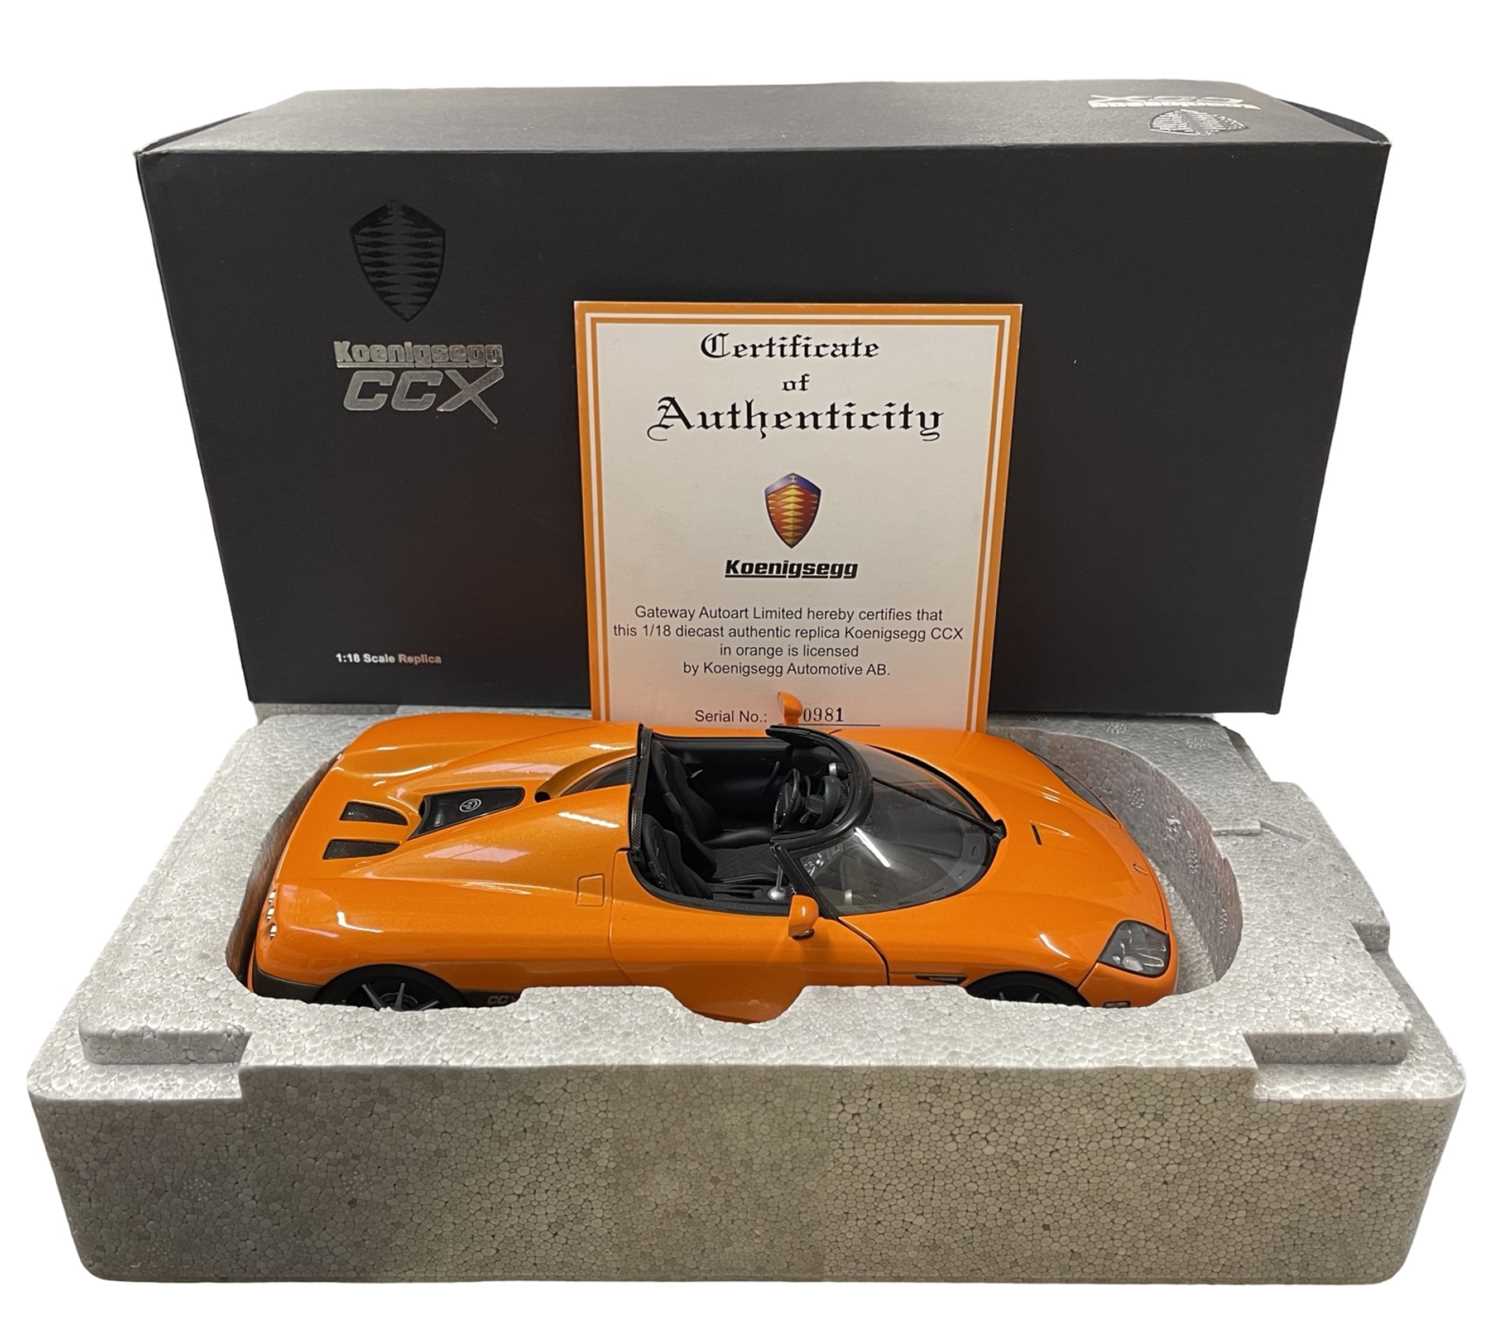 A boxed AutoArt 1:18scale model Koenigsegg CCZ in bright orange, with certificate.